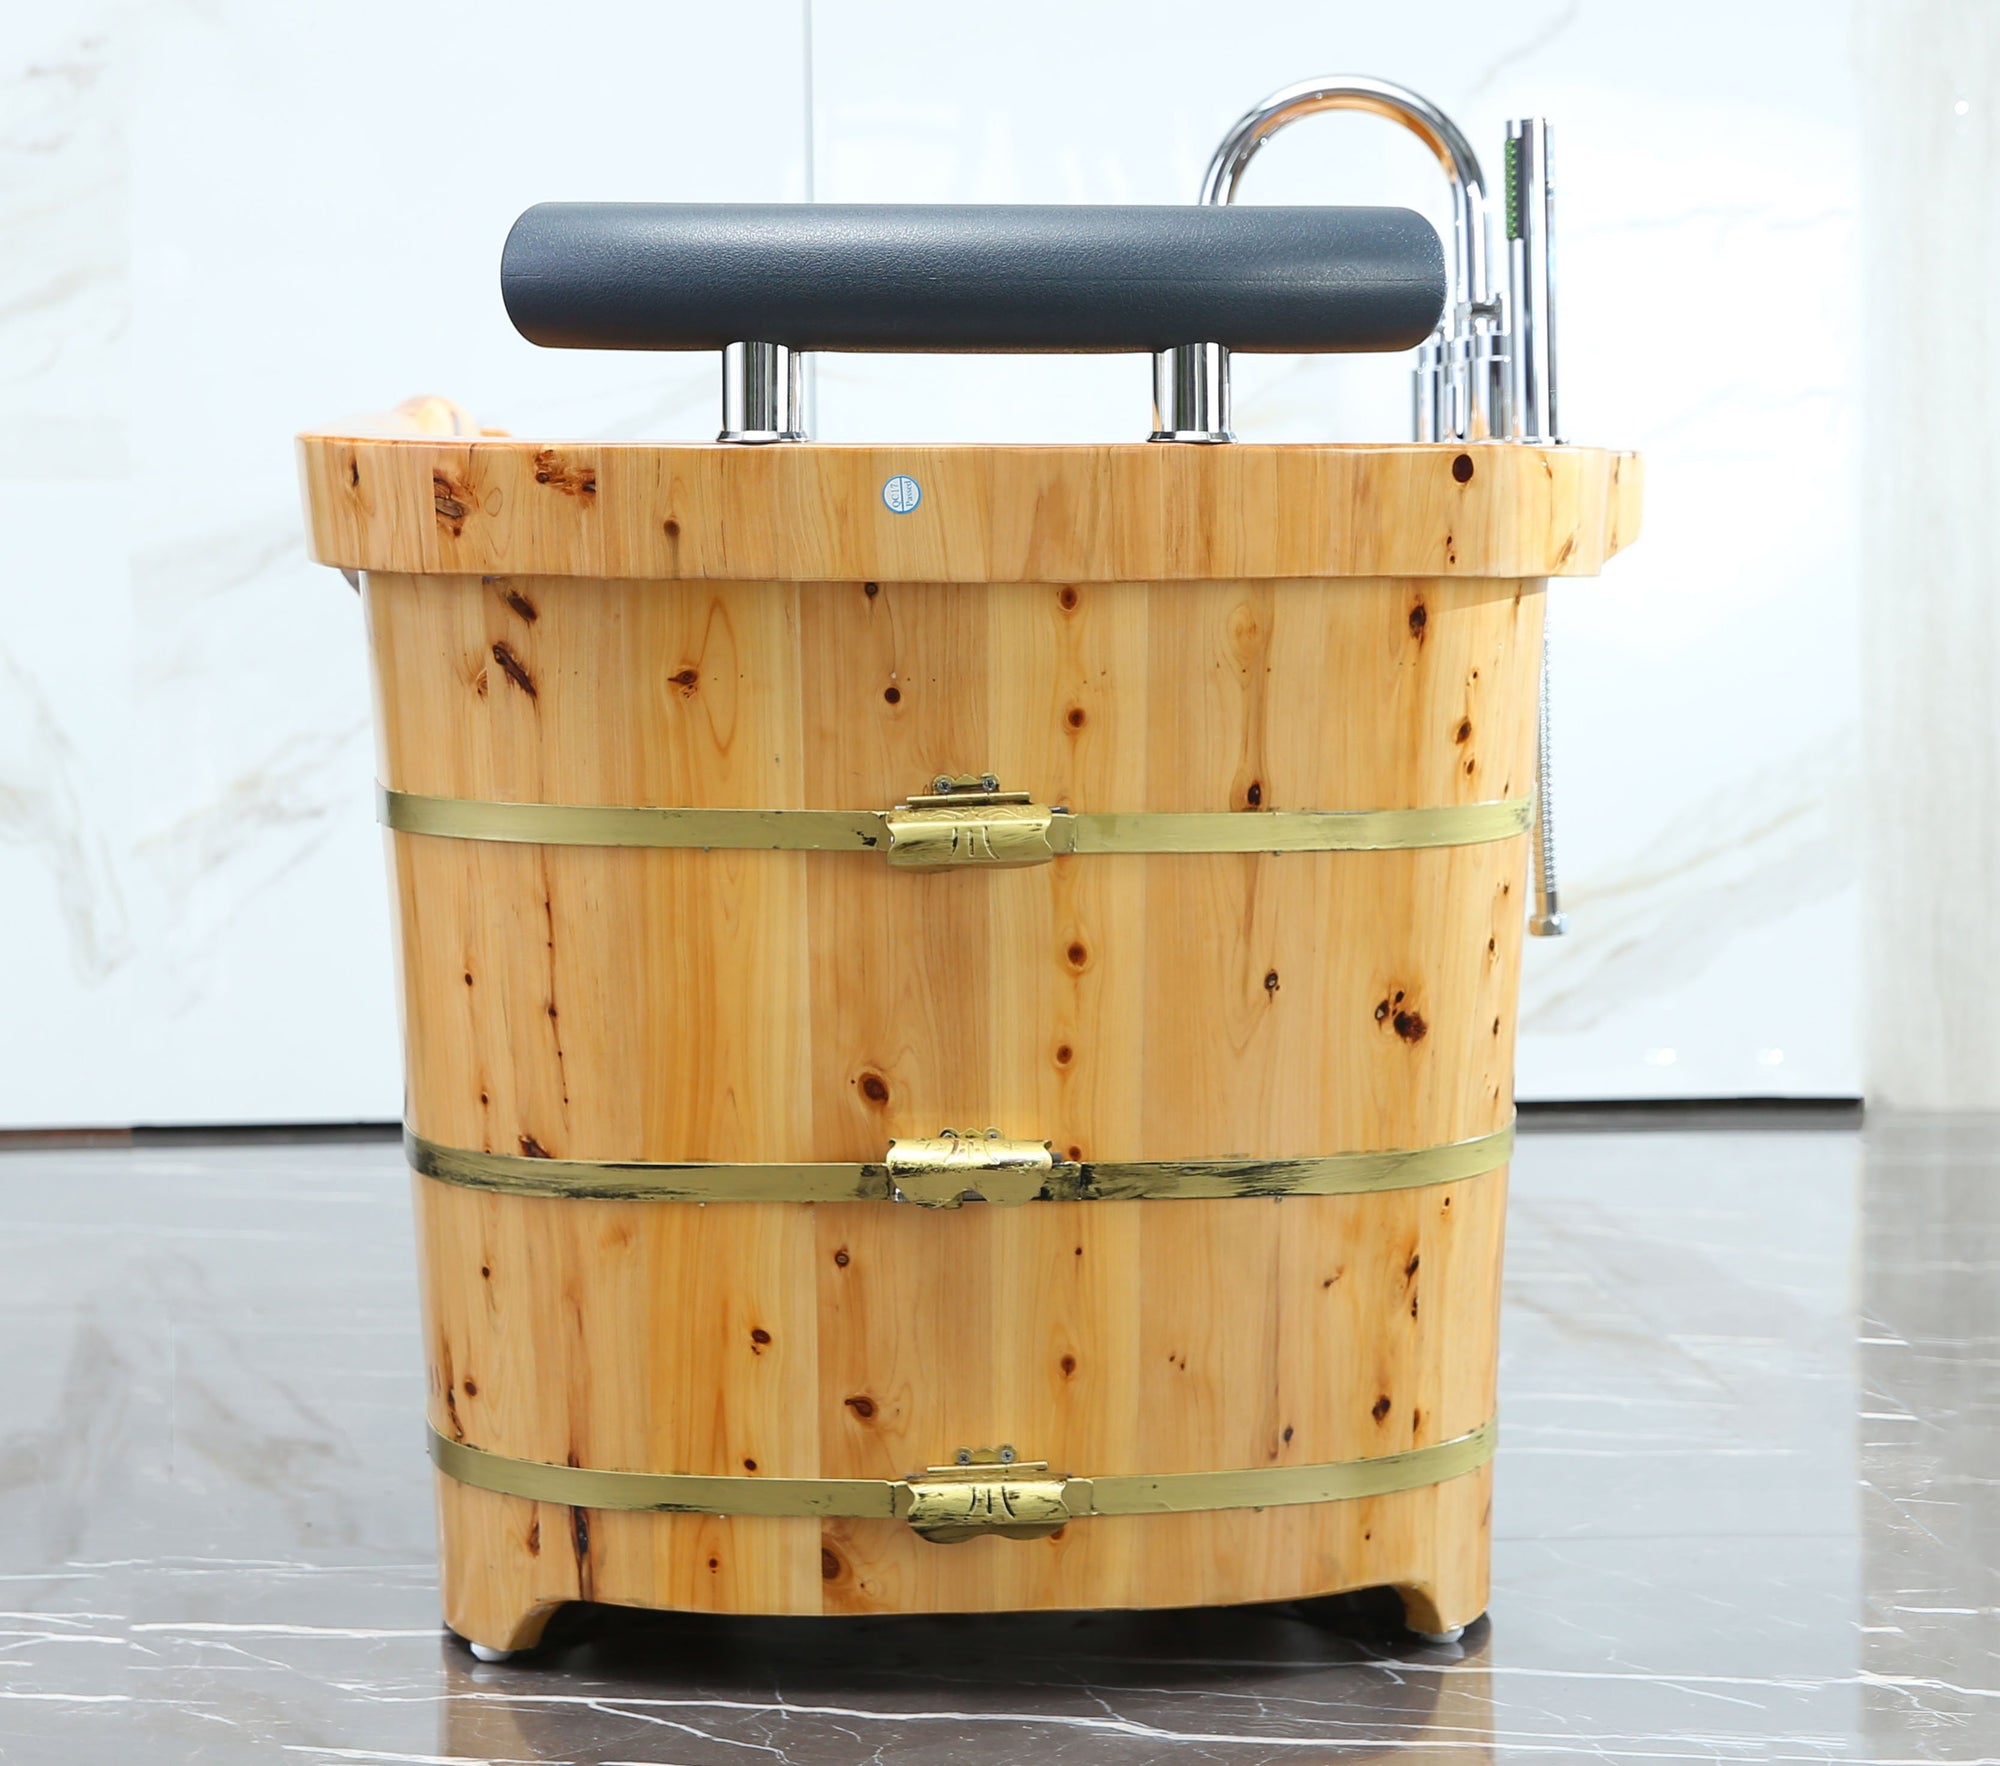 ALFI 61" Free-Standing Cedar Wood Bath Tub with Chrome Tub Filler